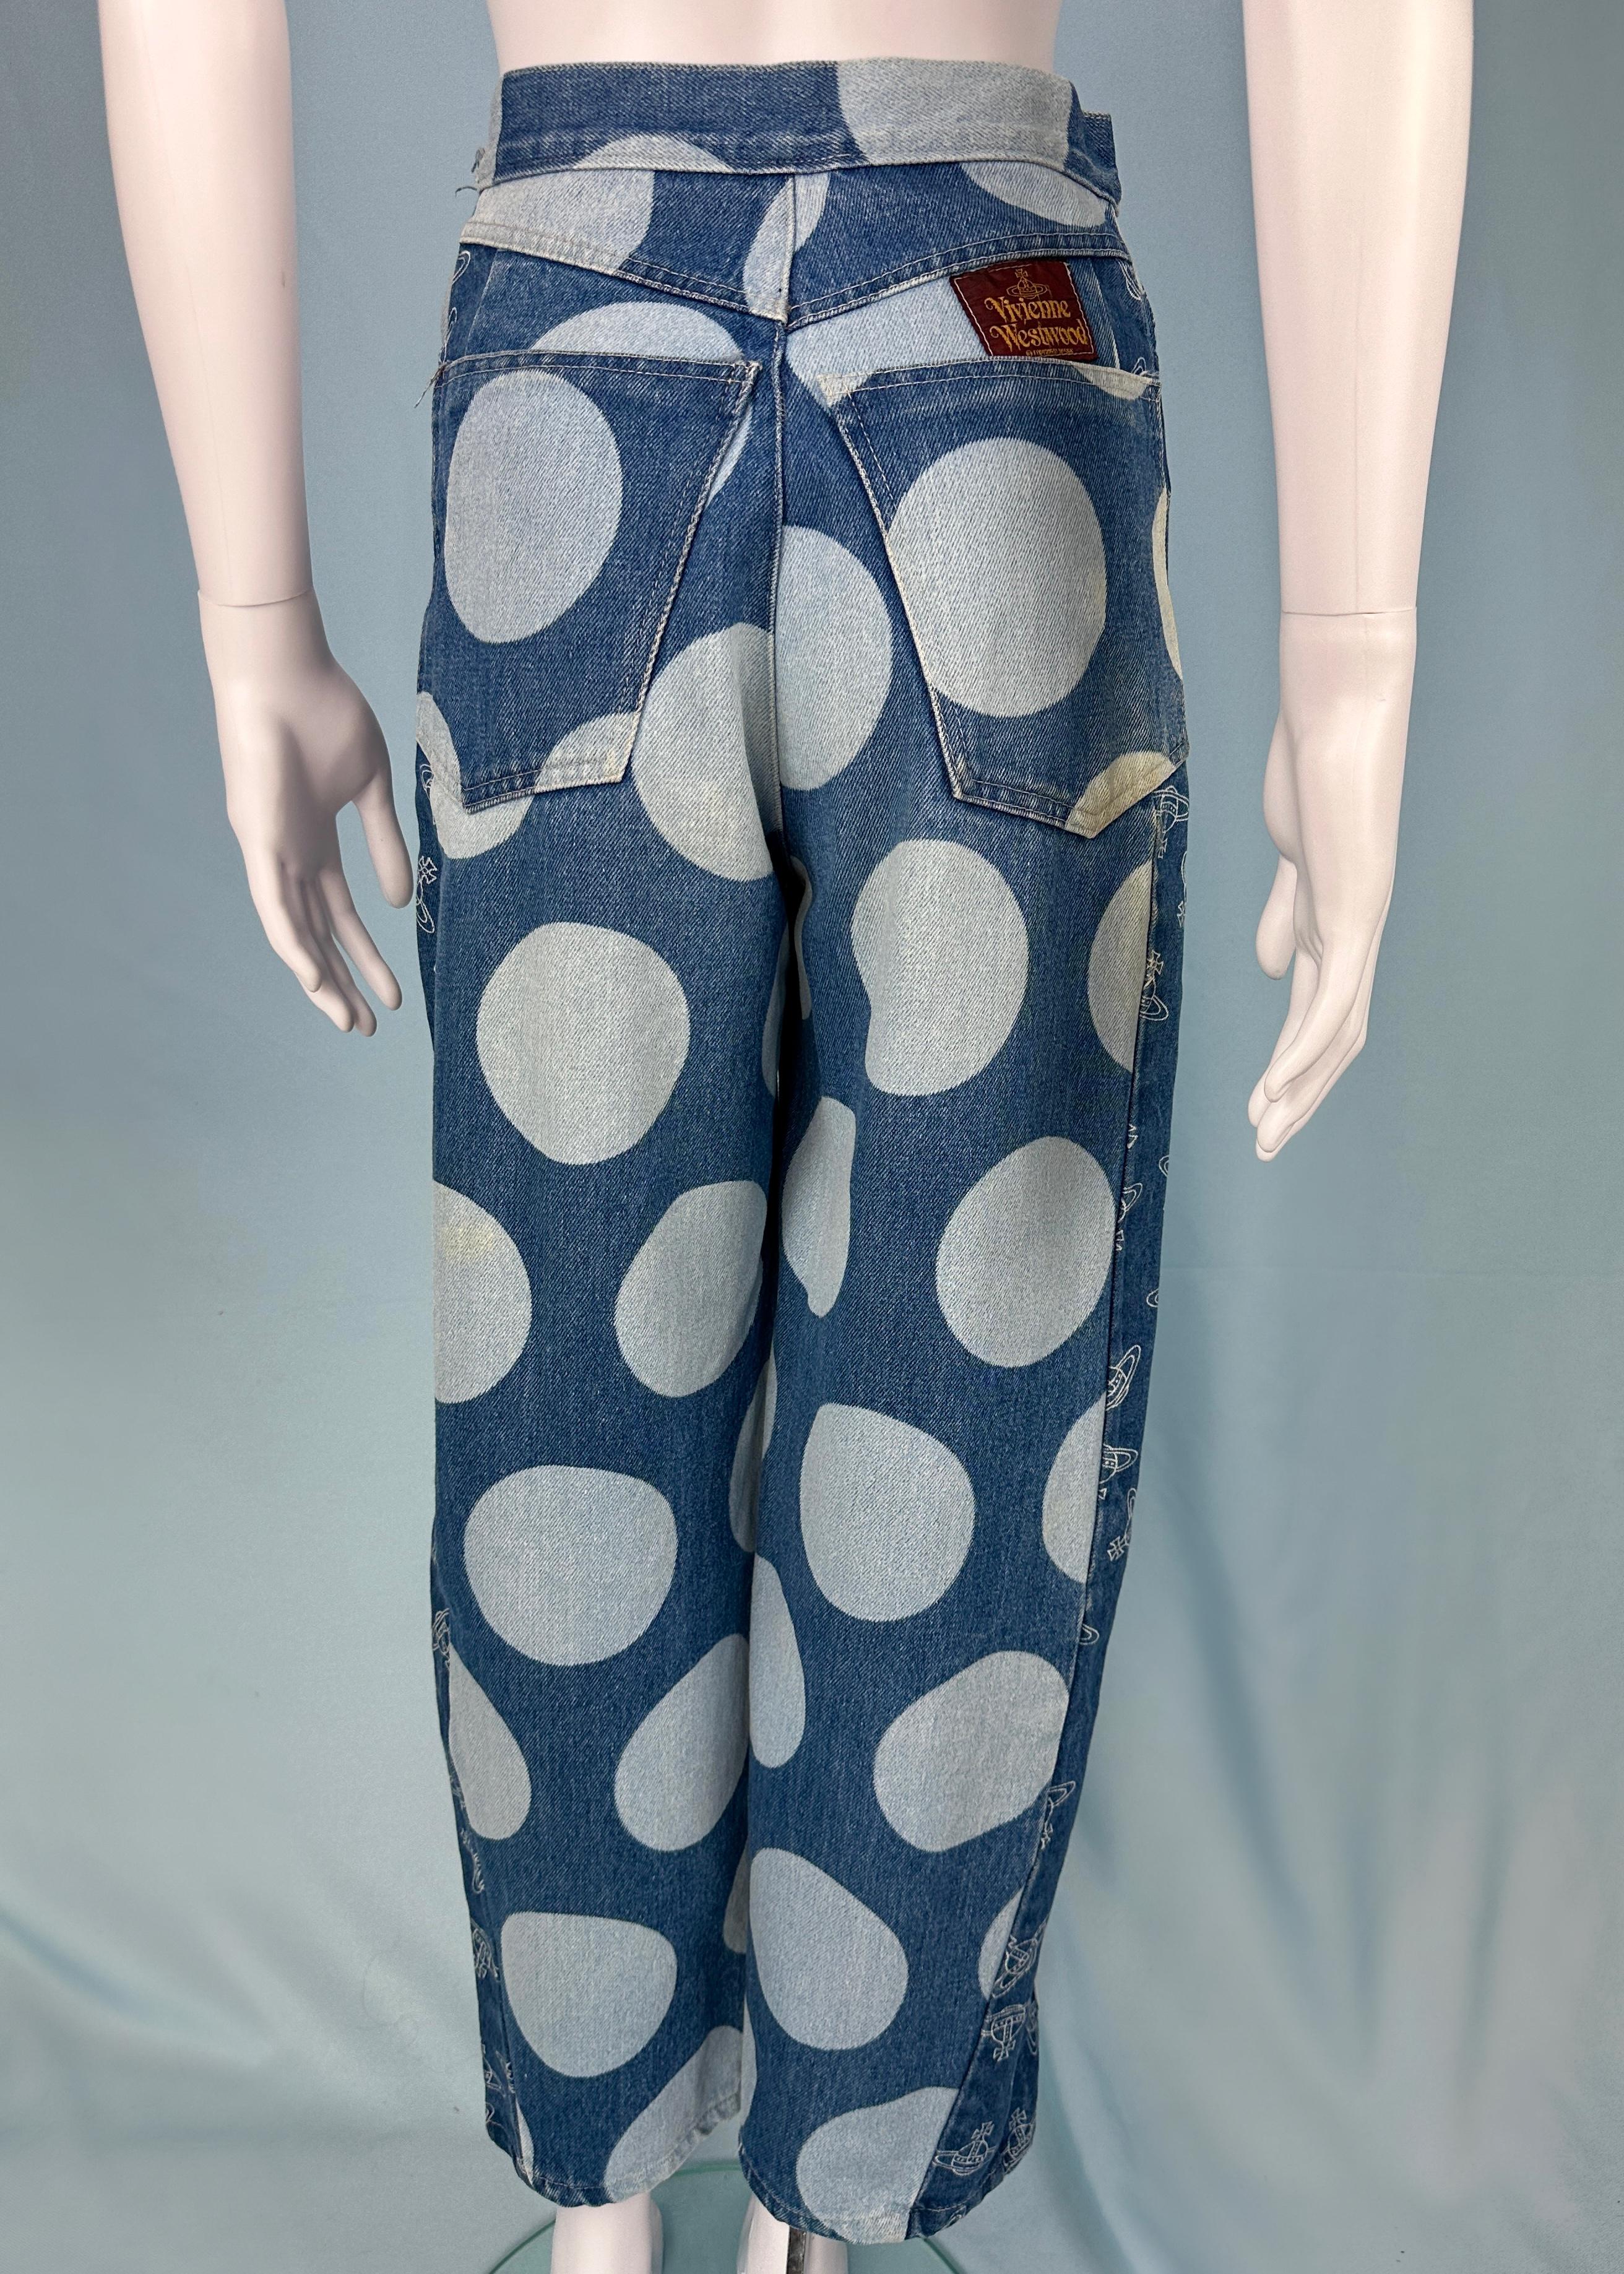 Vivienne Westwood Spring 1986 Orb & Polka Dot Denim Jeans For Sale 1